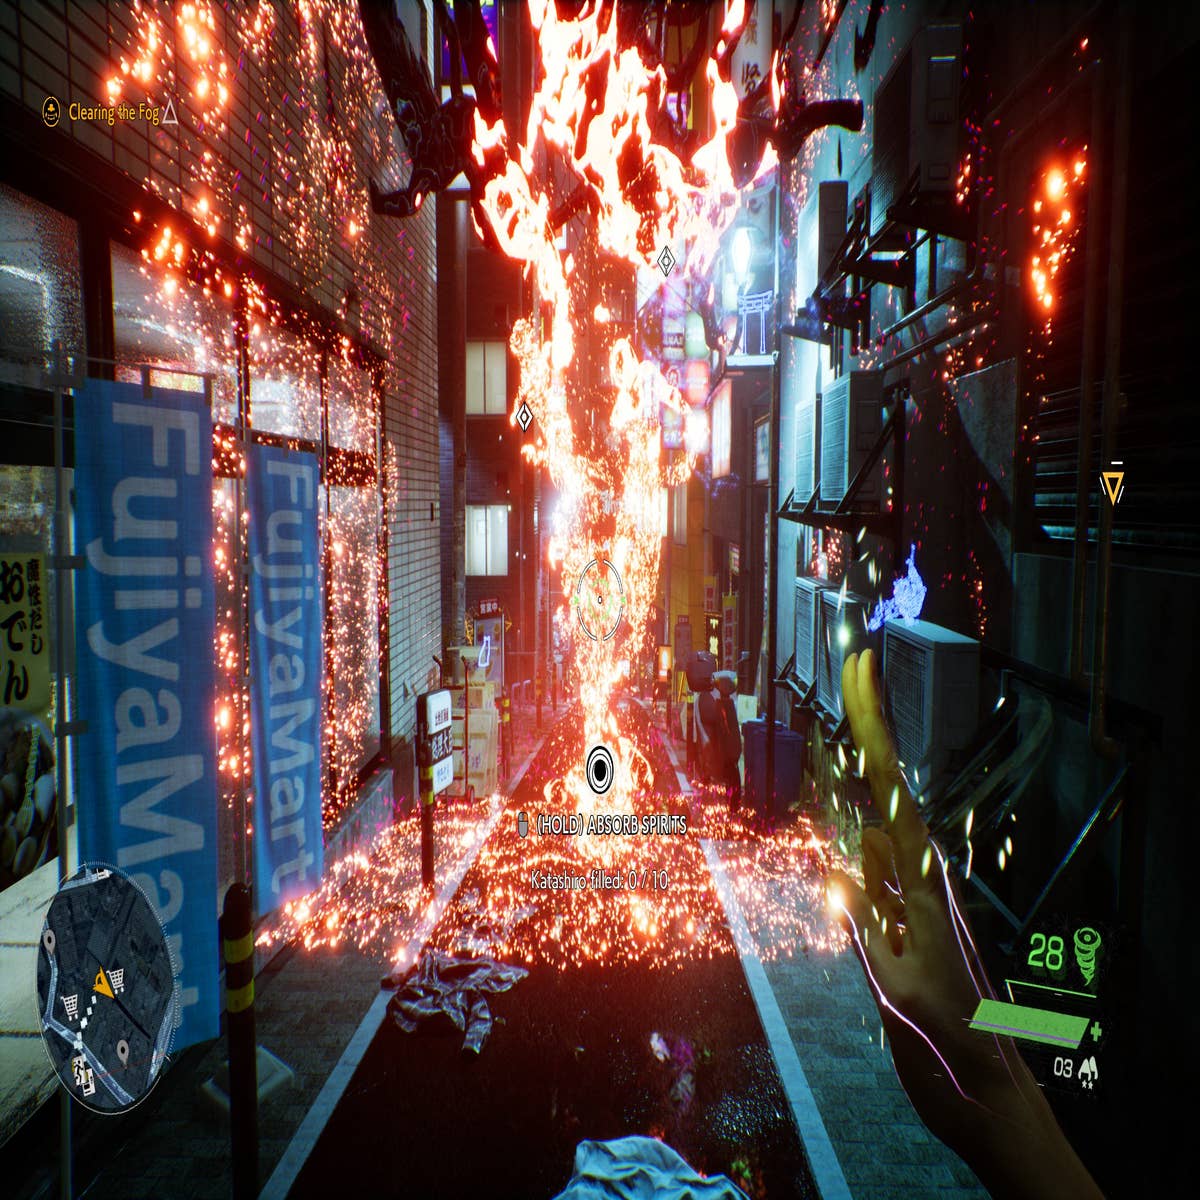 Ghostwire Tokyo - GRÁTIS na Prime Gaming + Teste 